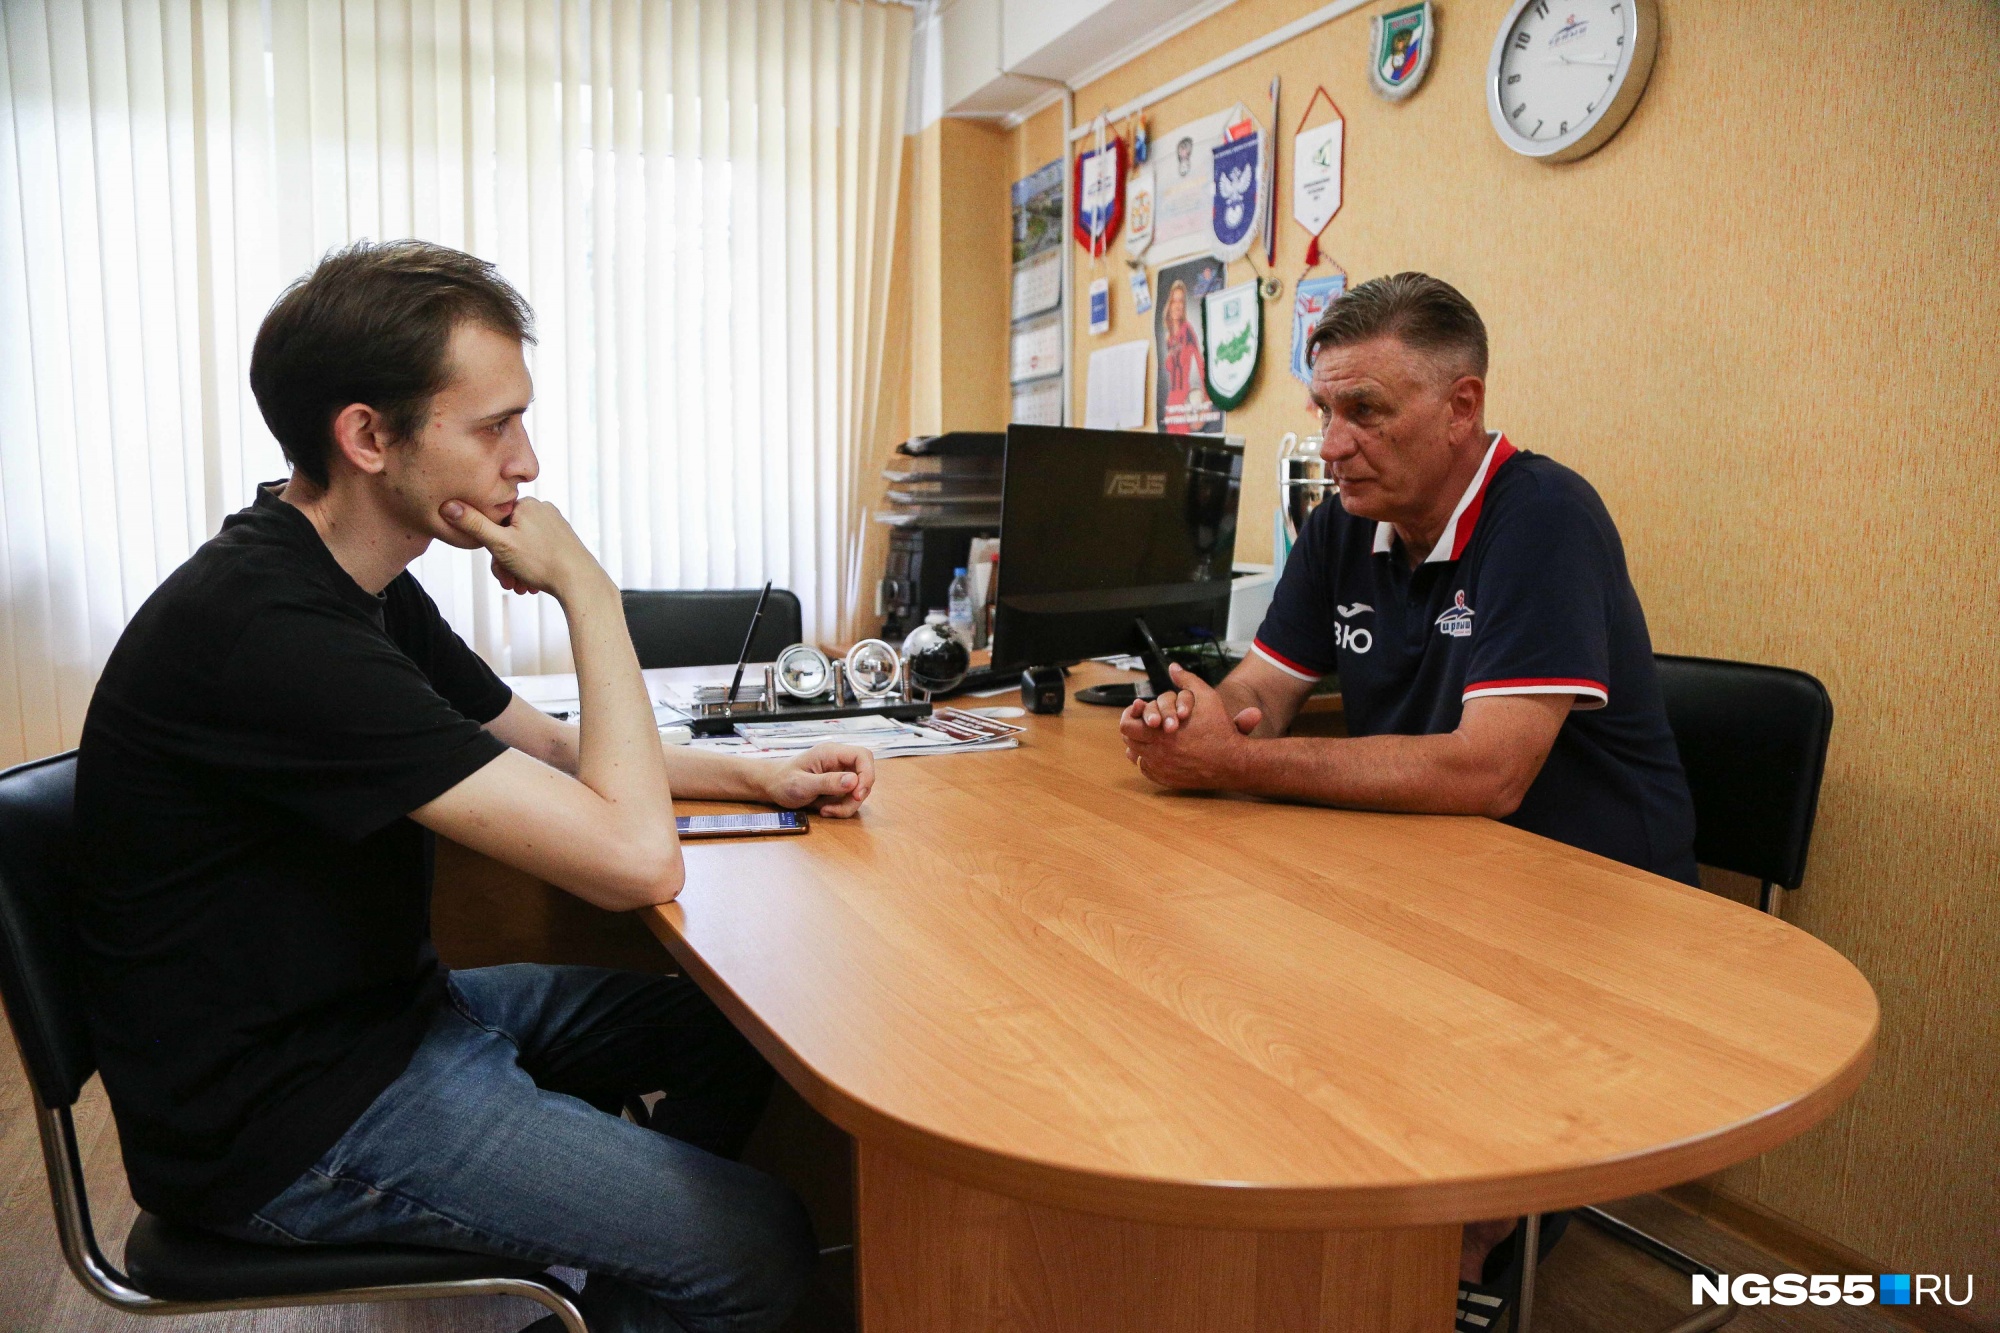 У тренера сохранились дружеские отношения с Павлом Погребняком, выступавшим за сборную России по футболу